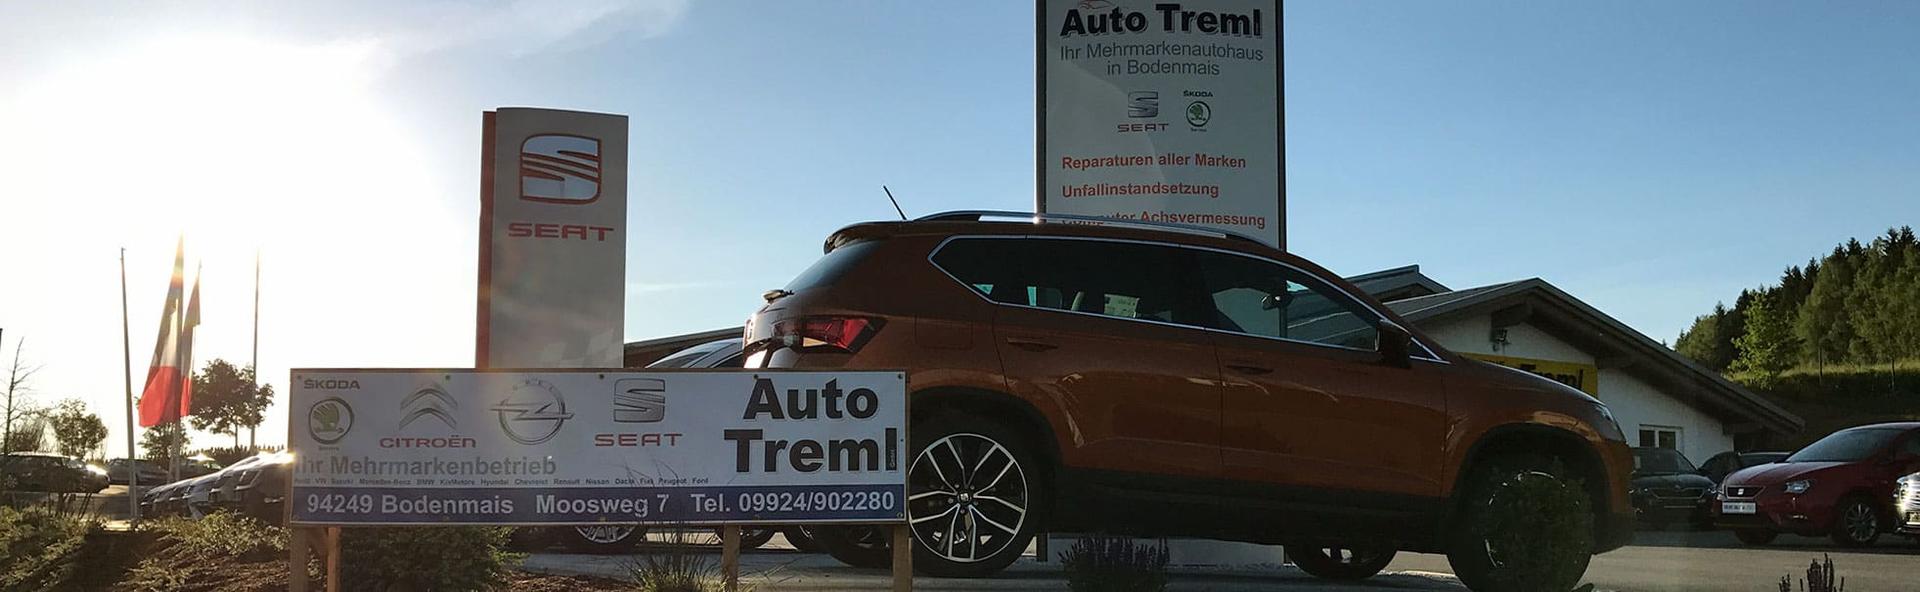 Auto Treml GmbH Verkauf von EU-Fahrzeugen, Neu- und Gebrauchtwagen